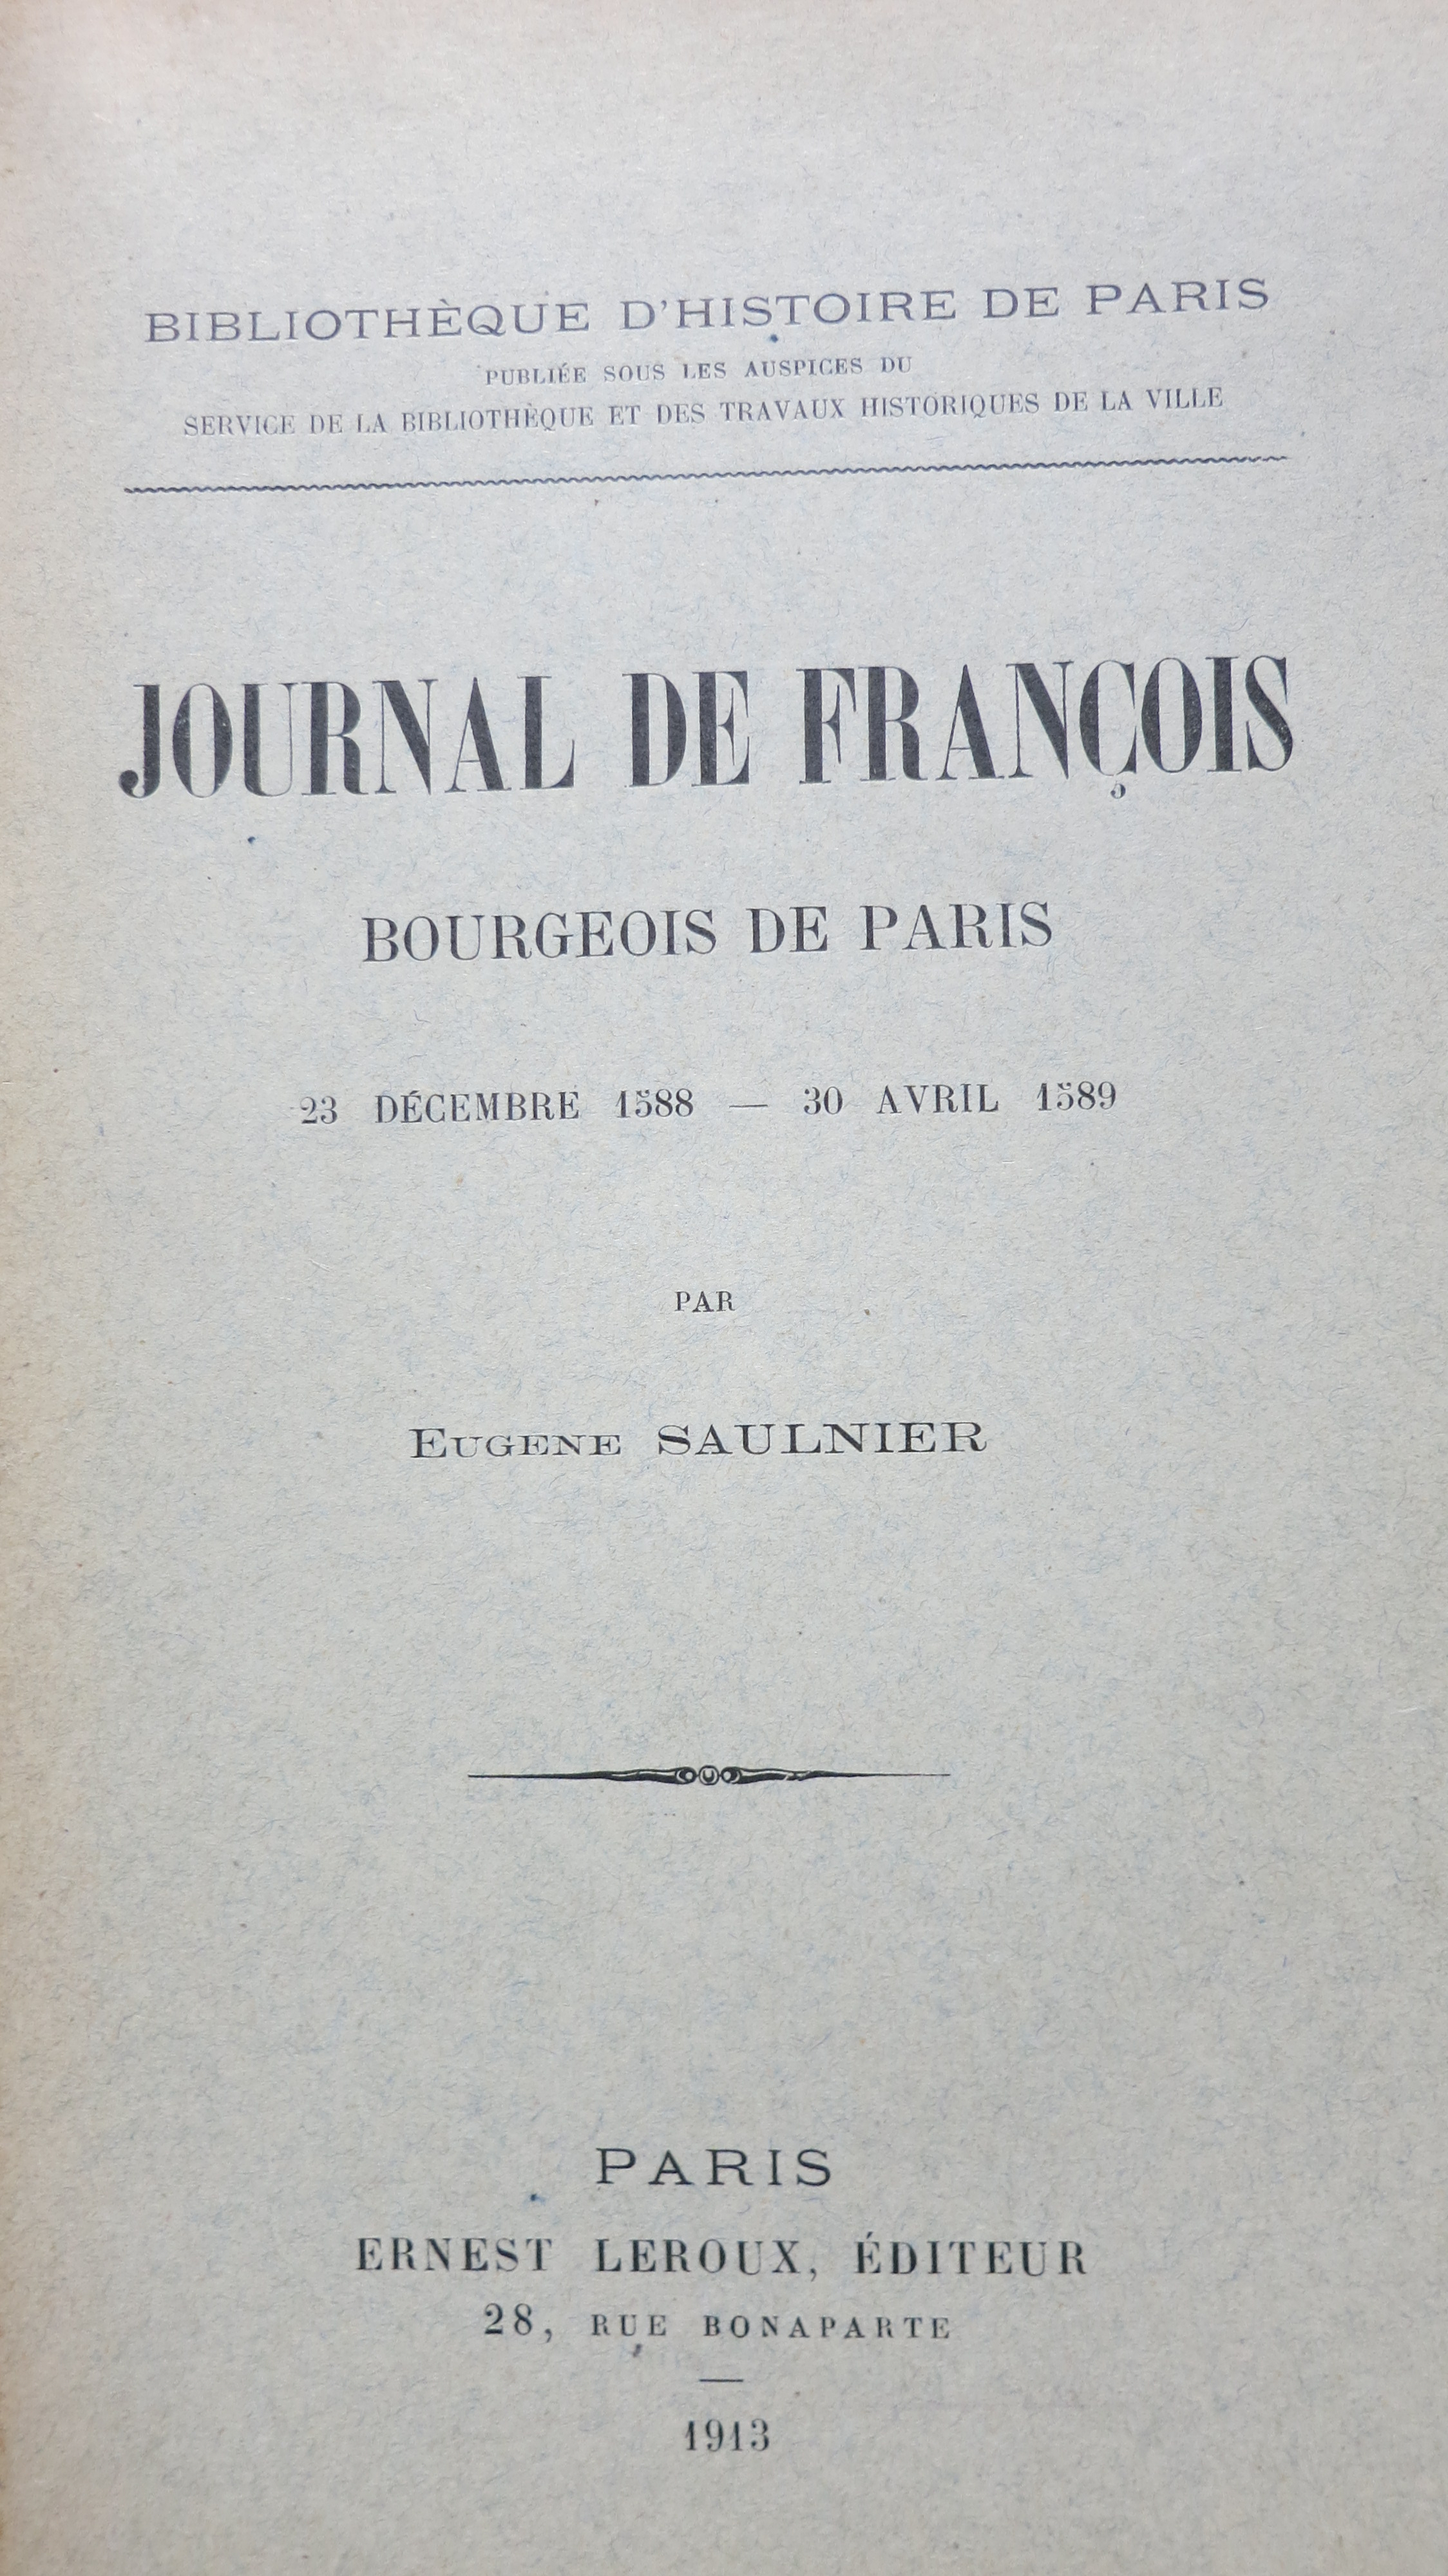 Journal de François bourgeois de Paris